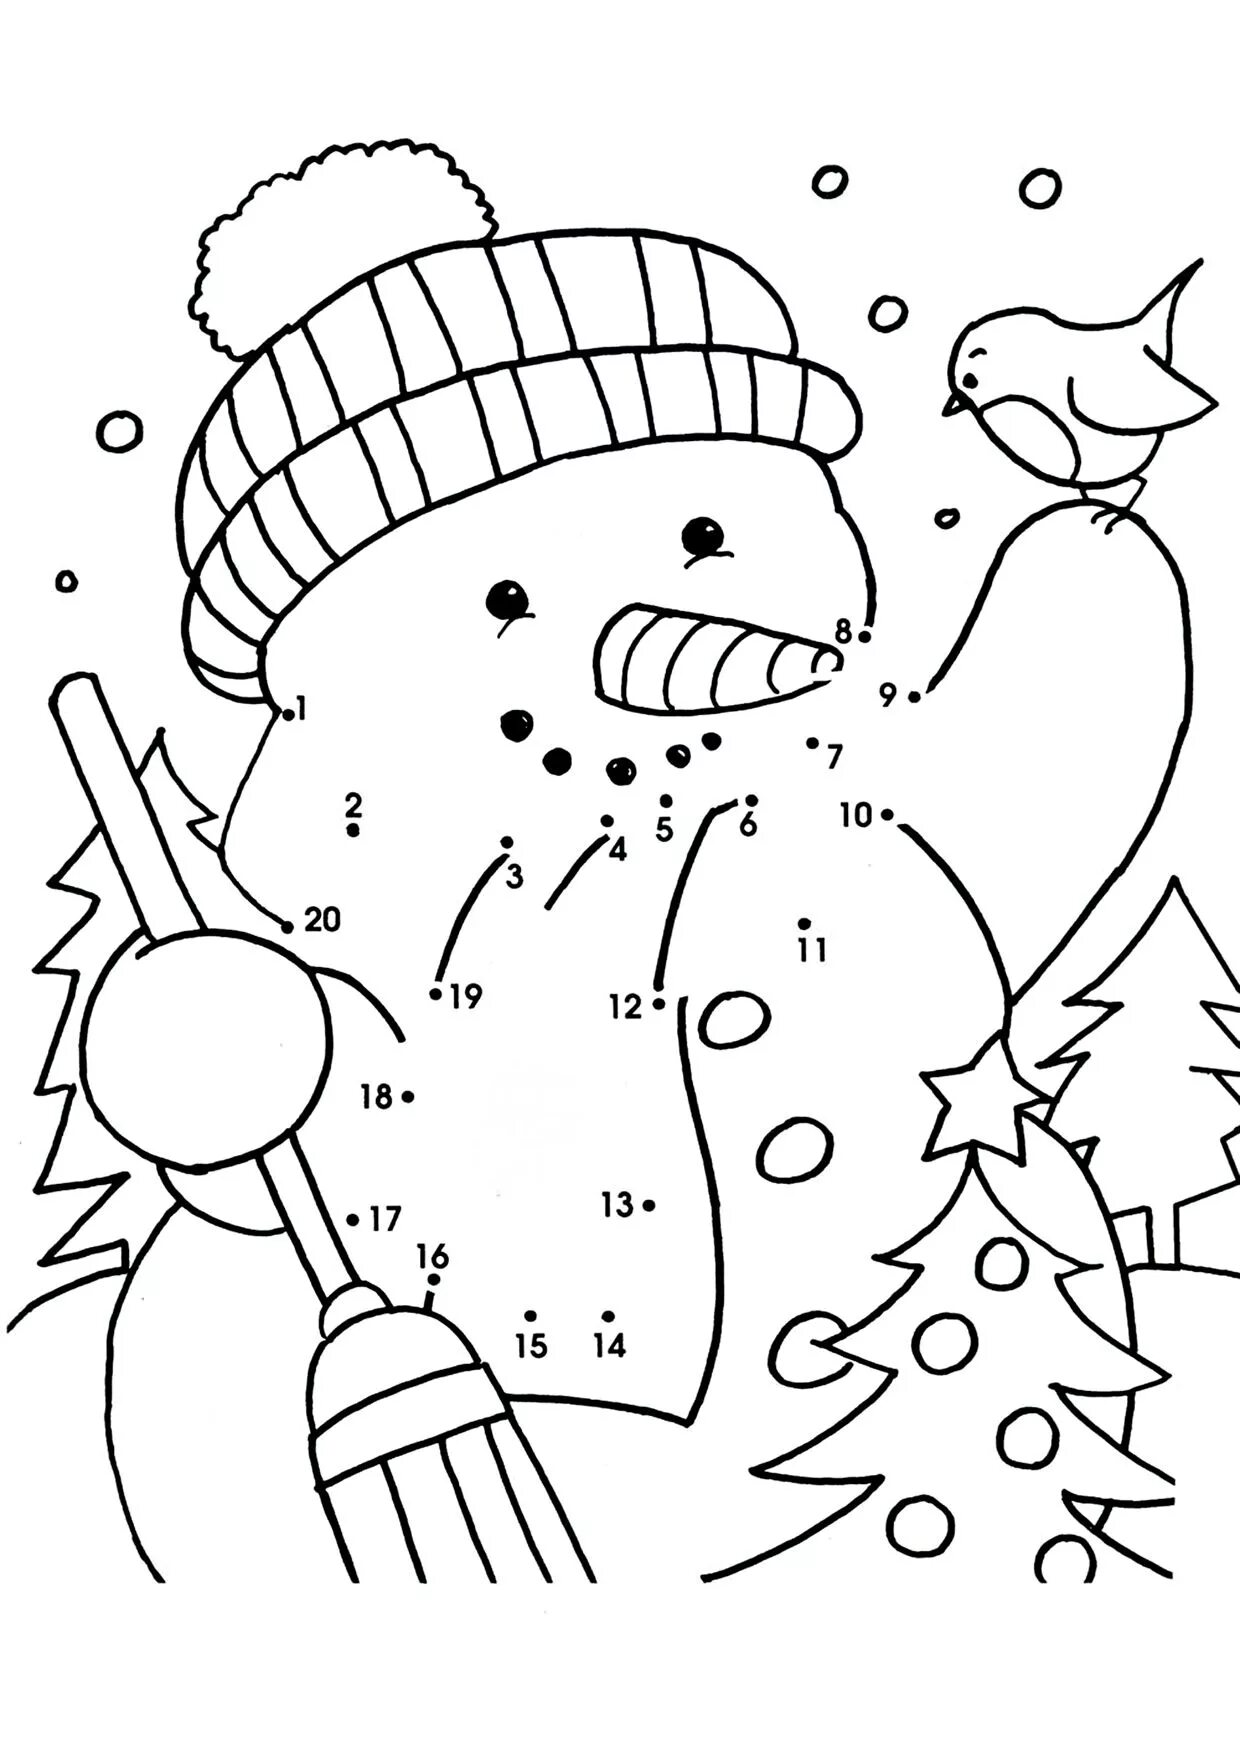 Раскраска сказочный снеговик в горошек